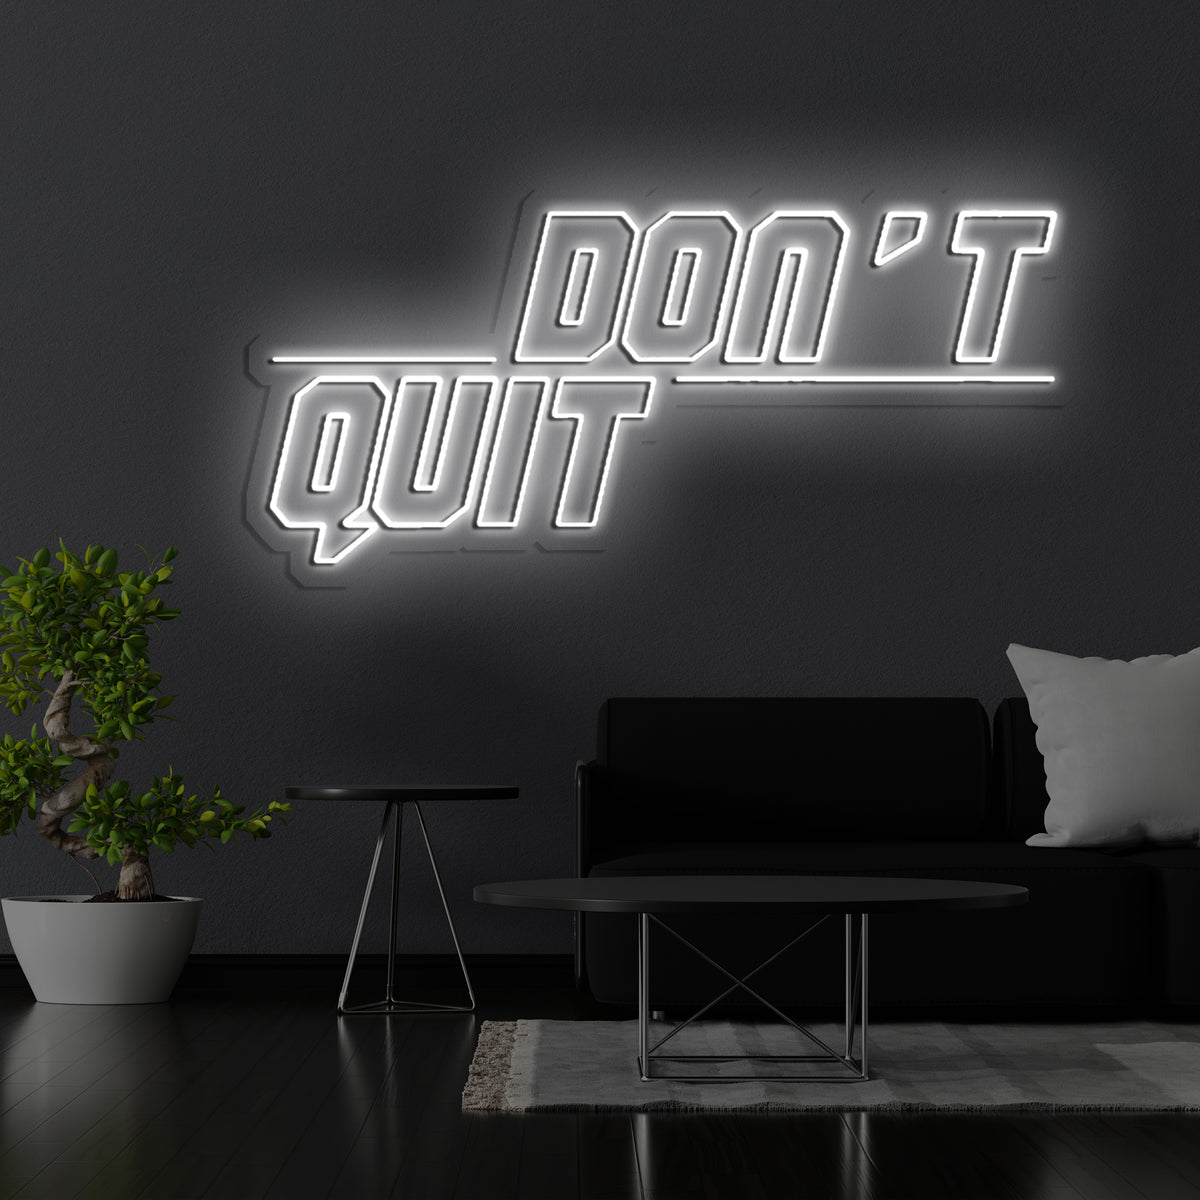 Don't Quit (Do It)